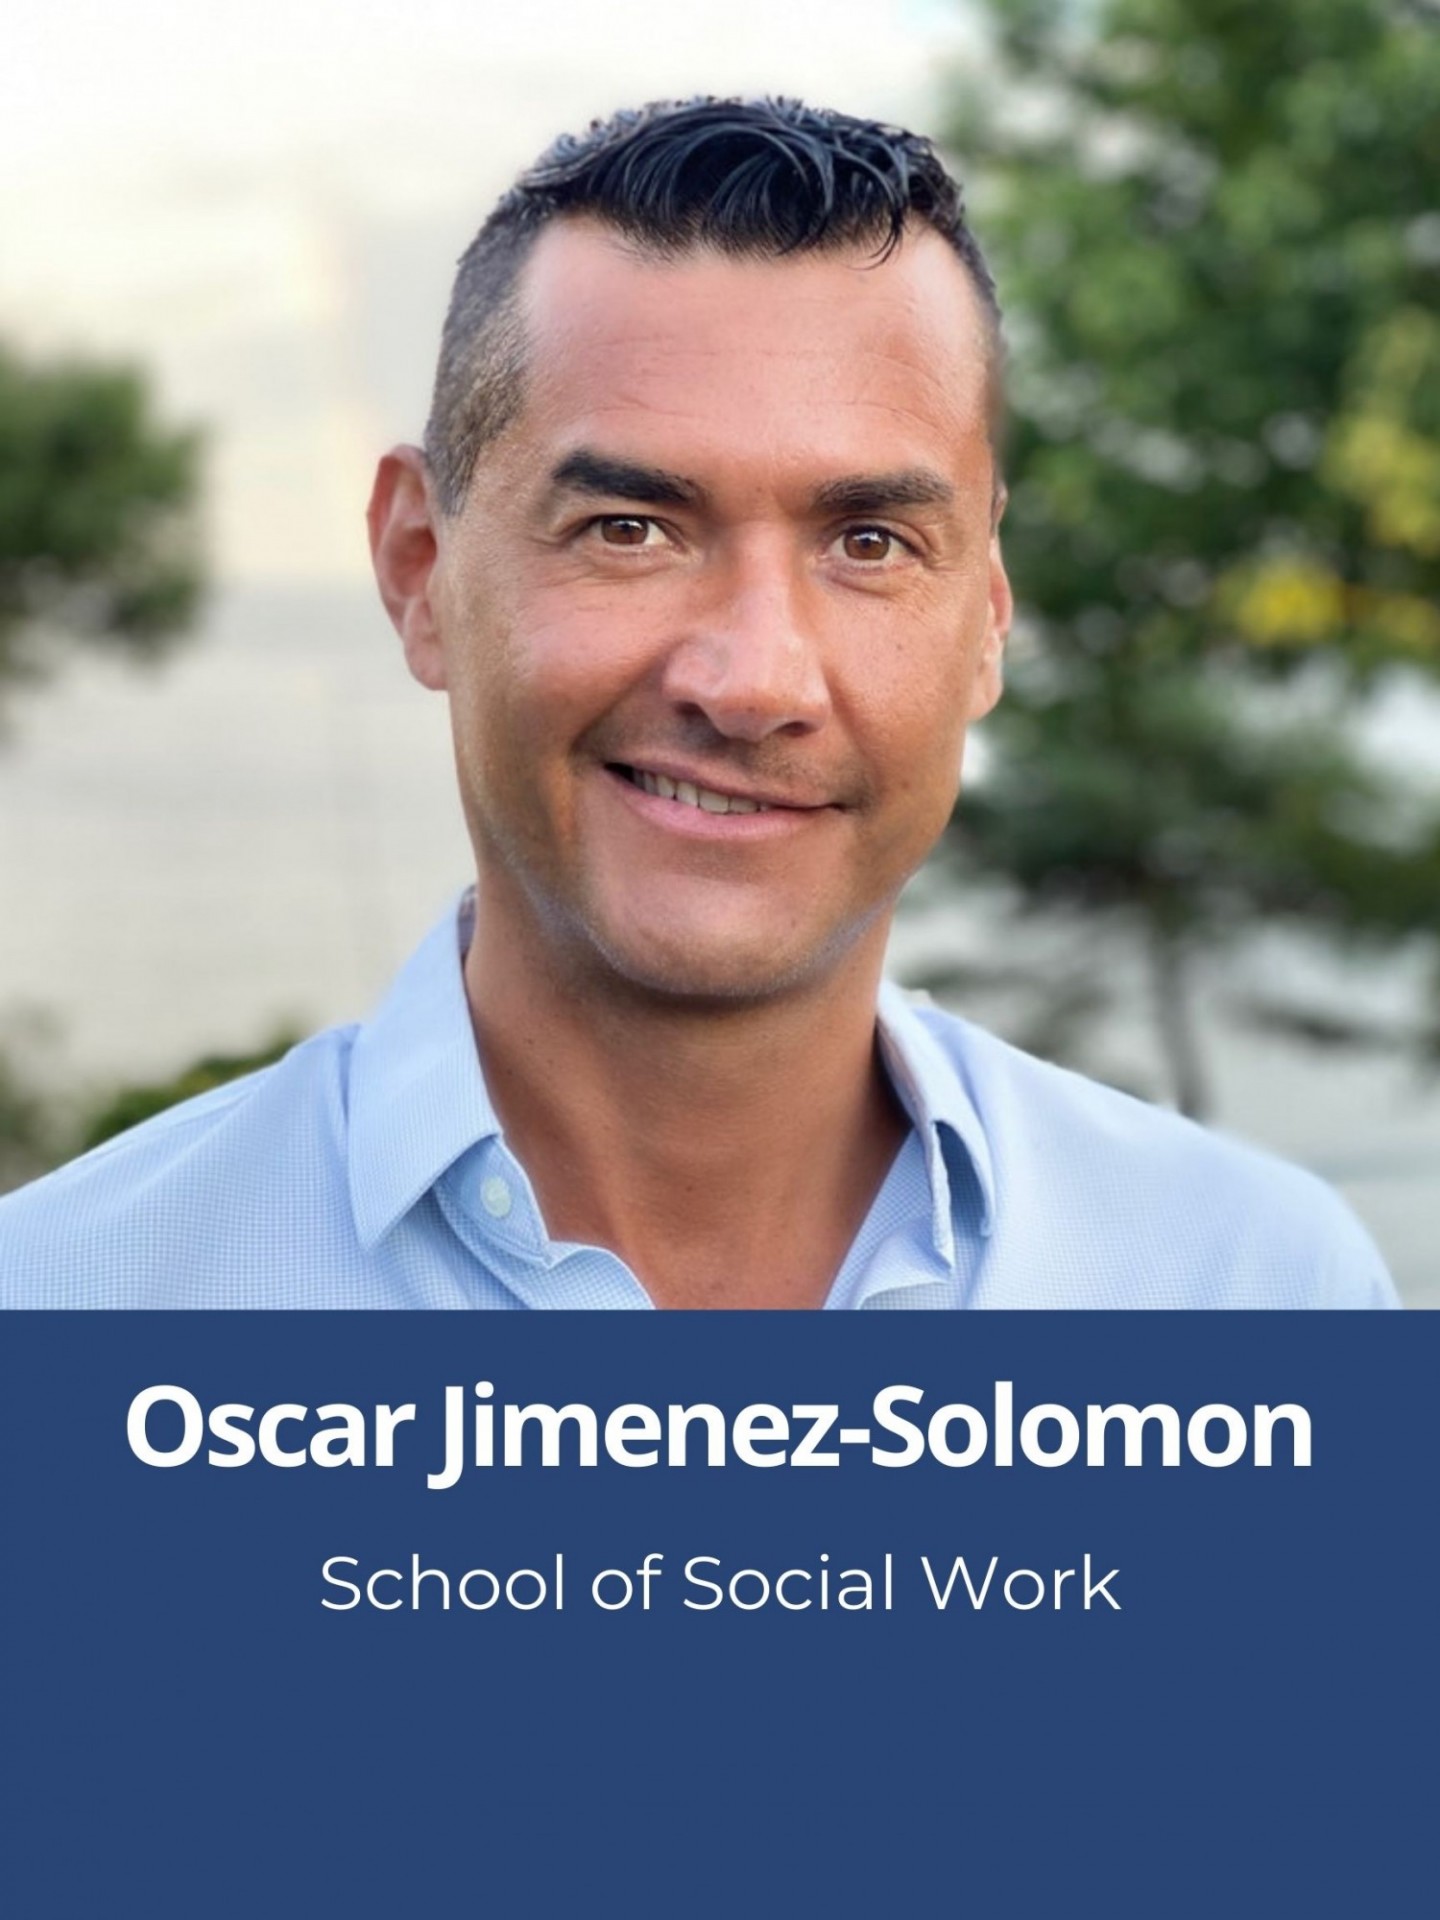 Oscar Jimenez-Solomon